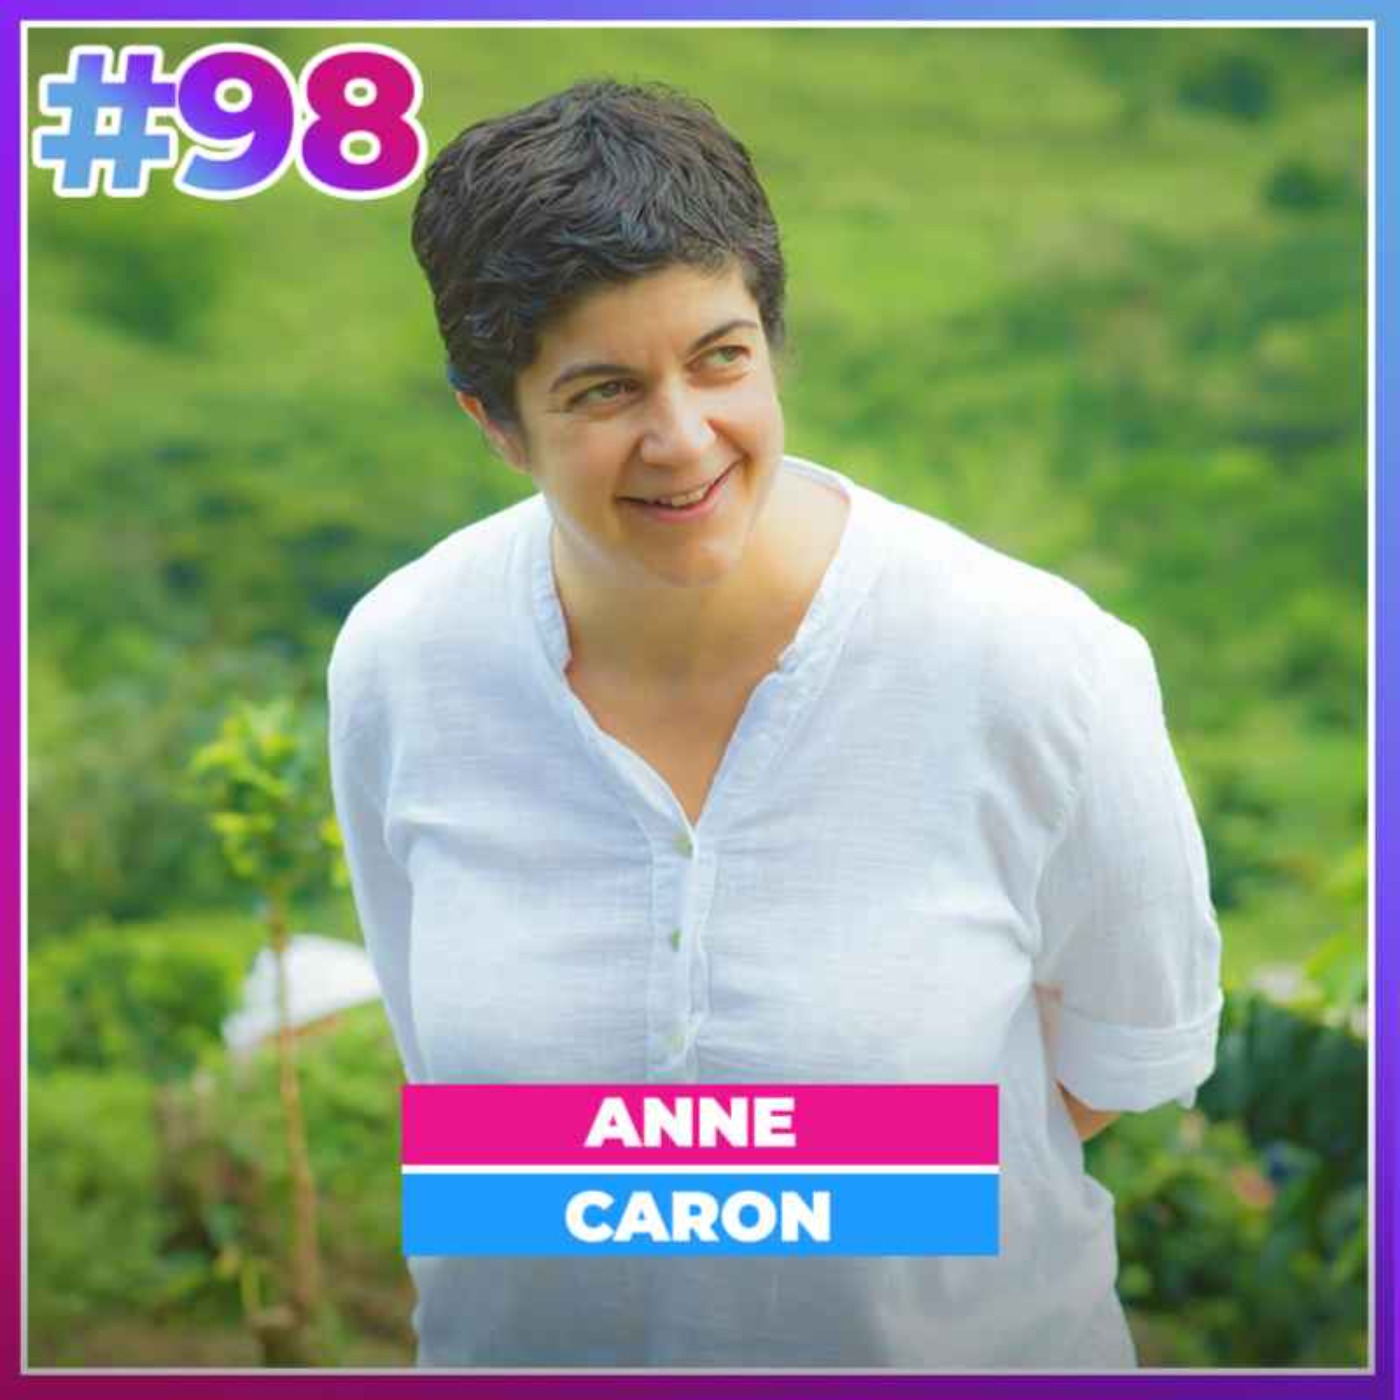 #98 ANNE CARON : LE MEILLEUR CAFÉ DU MONDE ?